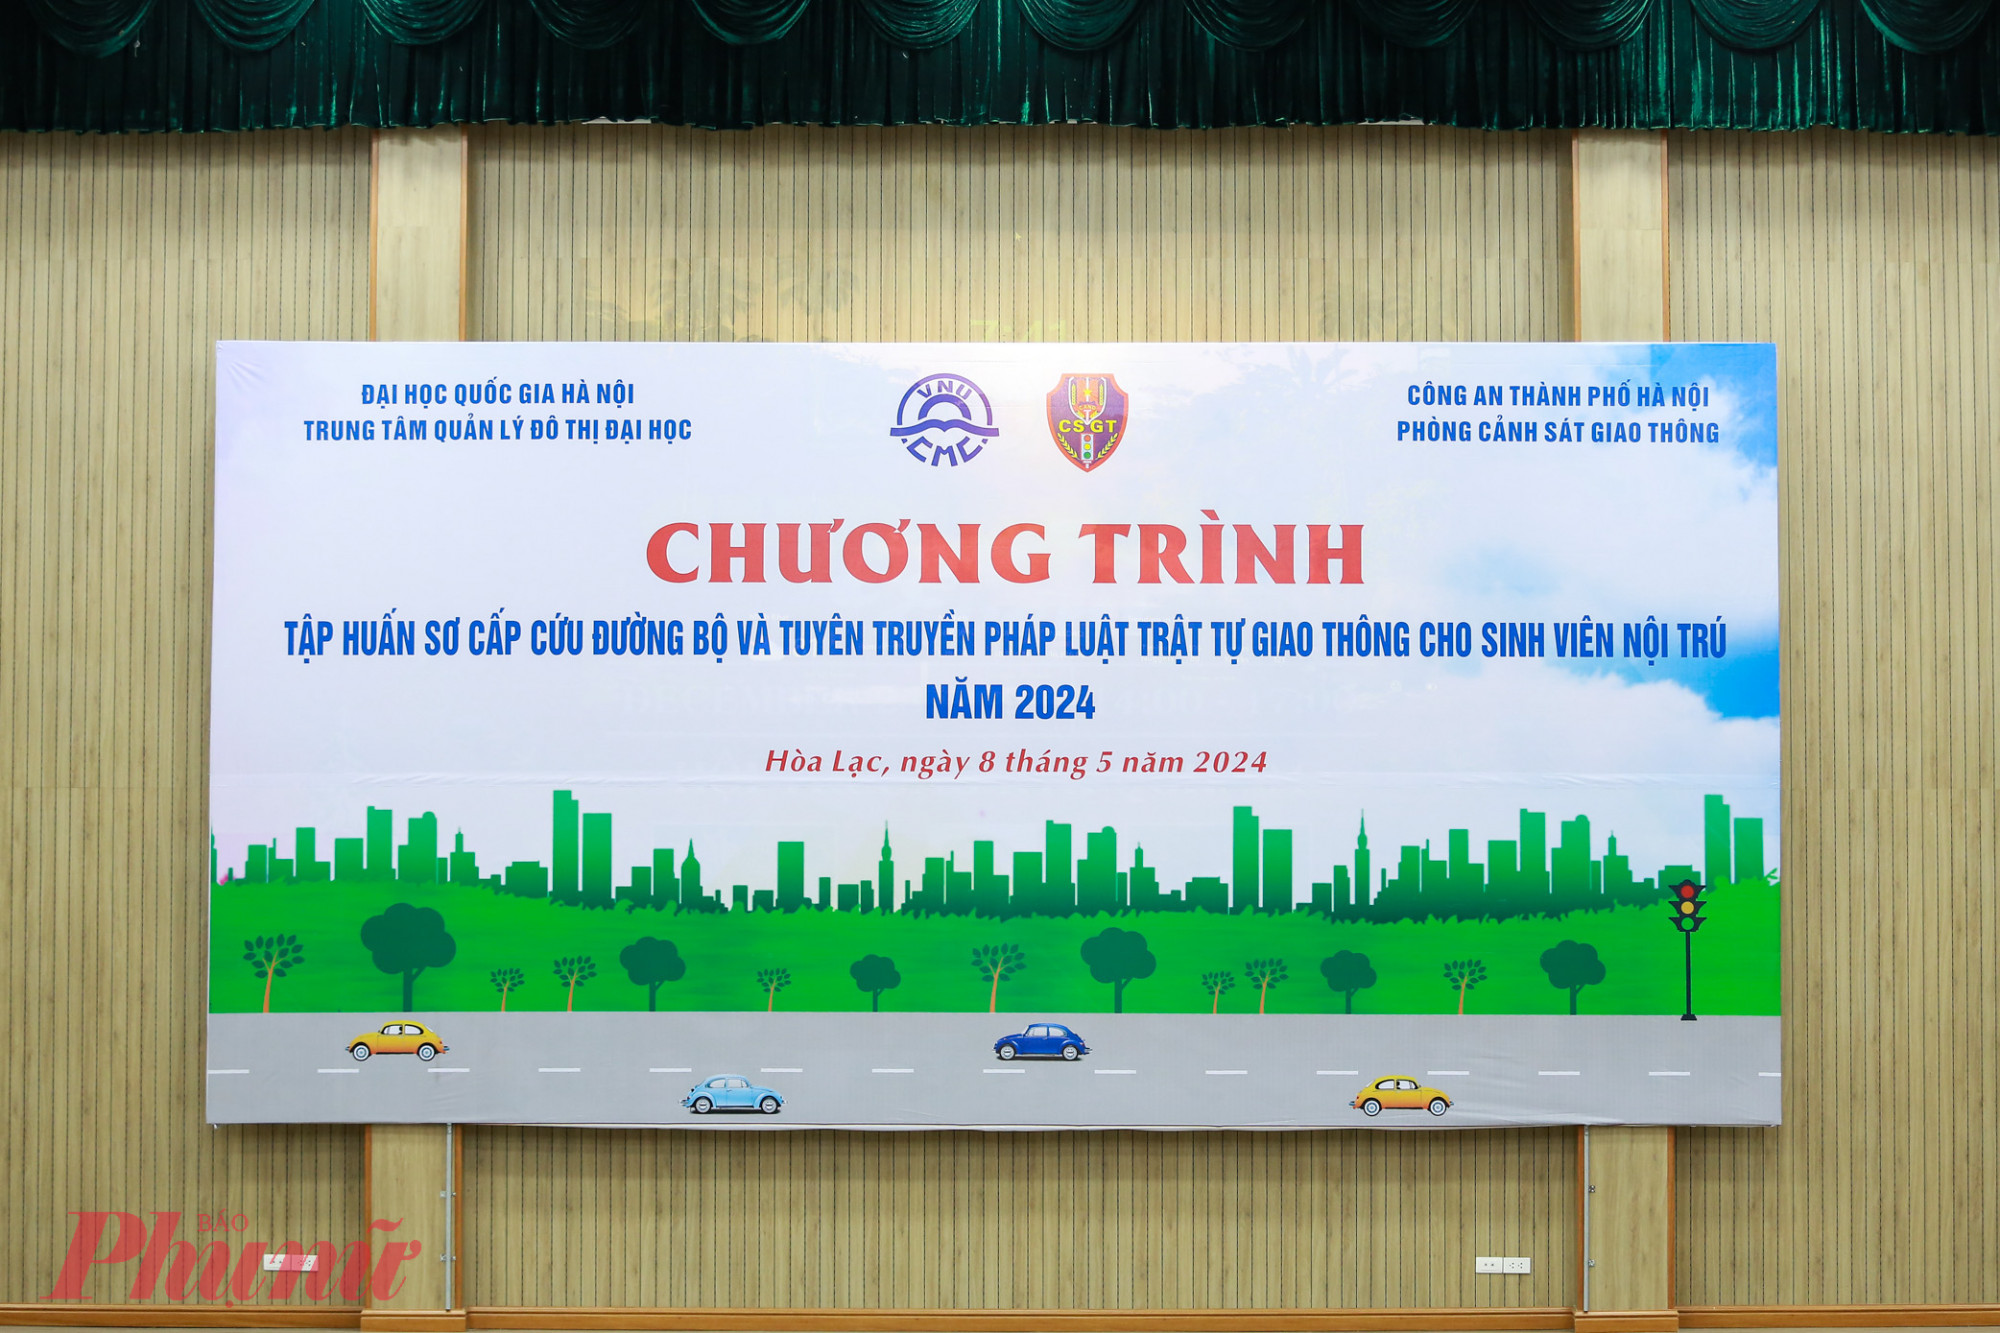 Chương trình Tập huấn sơ cứu đường bộ và tuyên truyền Pháp luật TTATGT năm 2024 được tổ chức tại Trung tâm quản lý đô thị Đại học – Đại học Quốc gia Hà Nội (Hòa Lạc, Thạch Thất, Hà Nội).